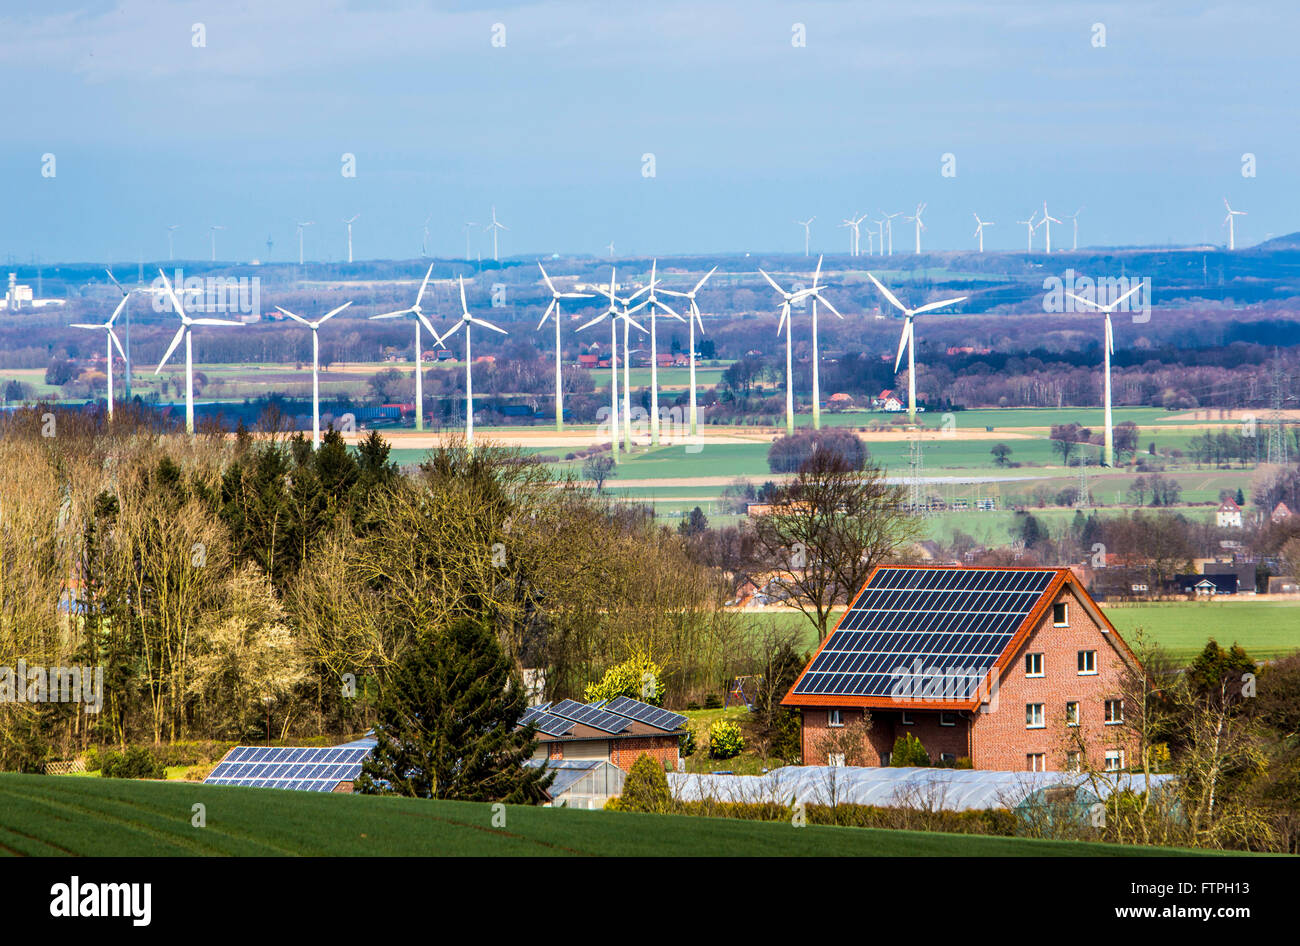 Casa privata con energia solare impianto sul tetto, parco del vento, le  turbine eoliche,impianto di energia eolica, vicino Ense, Germania Foto  stock - Alamy